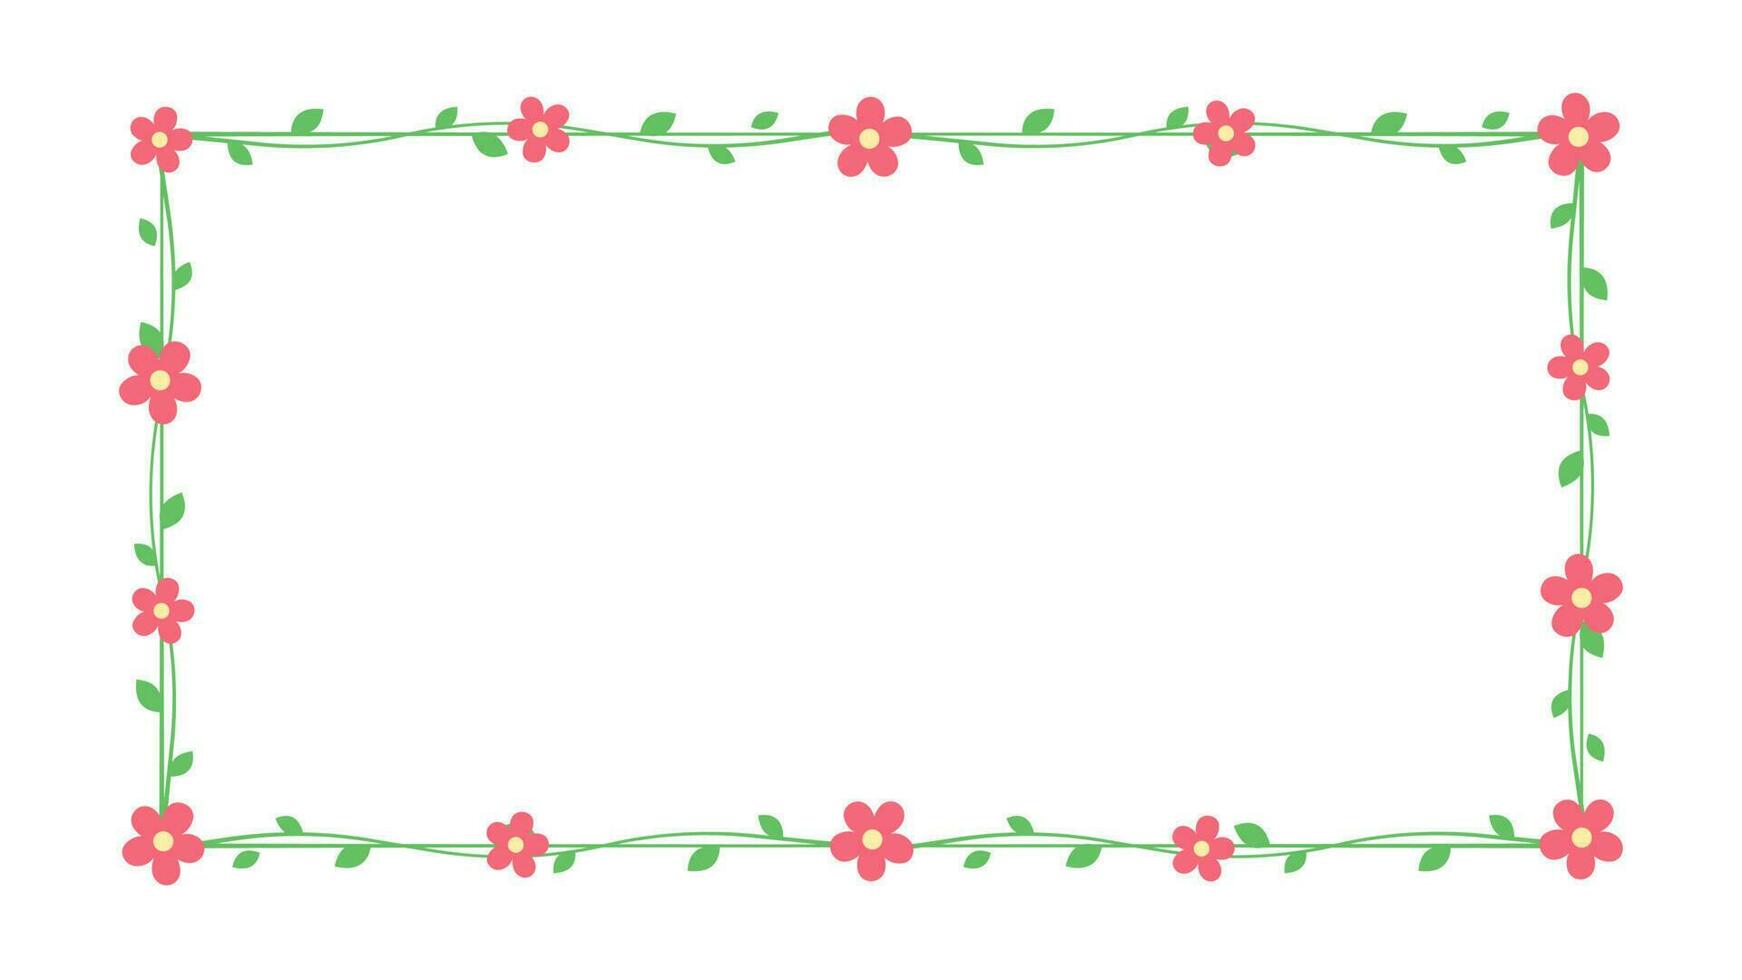 Rechteck Grün Ranke mit rot Blumen Rahmen und Grenze, Blumen- botanisch Design Element Vektor Illustration